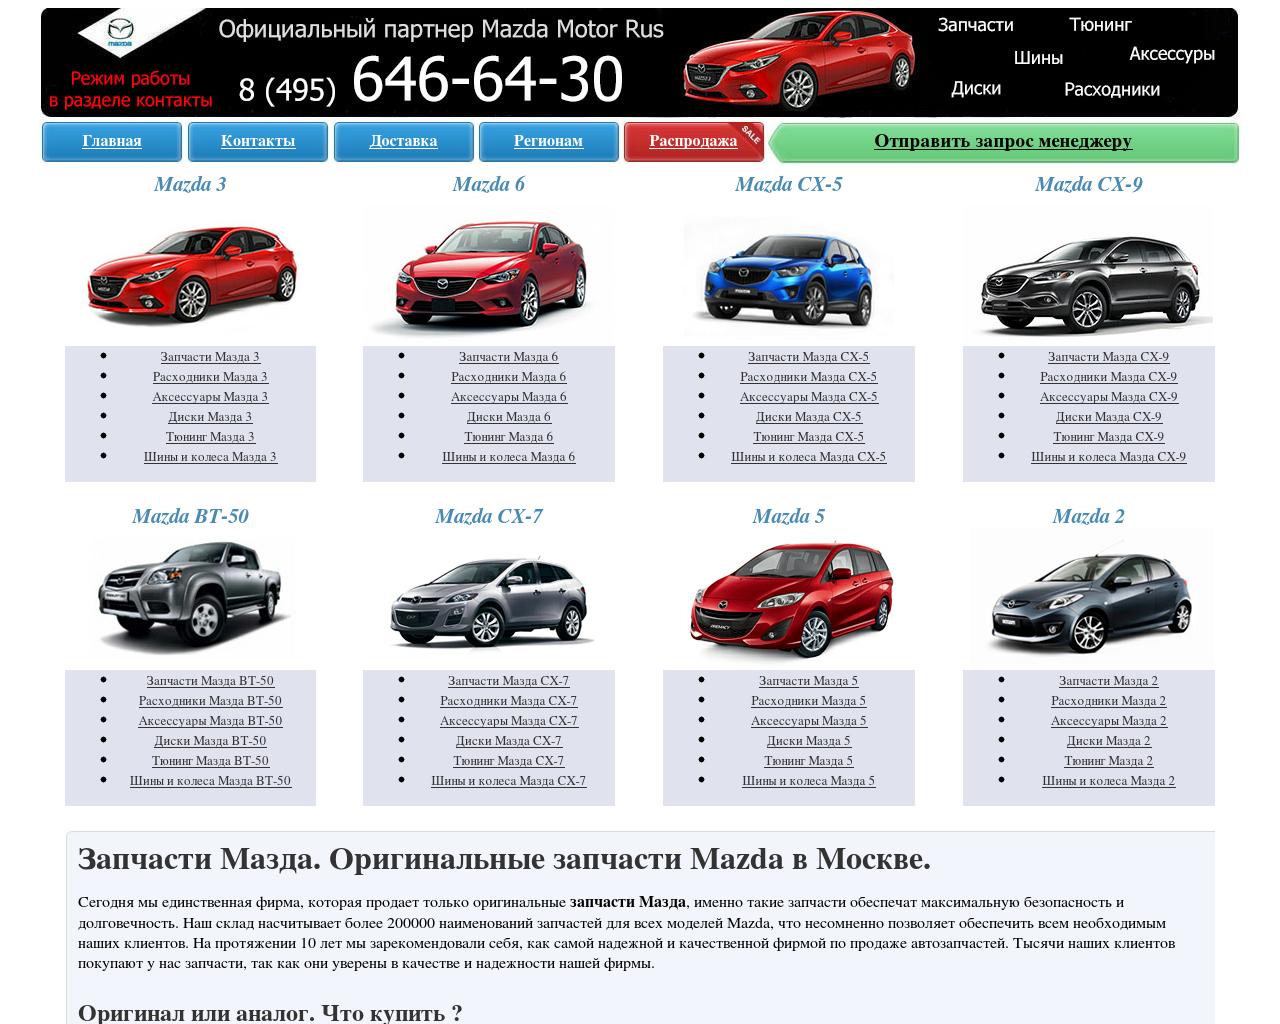 Изображение сайта mazdanet.ru в разрешении 1280x1024